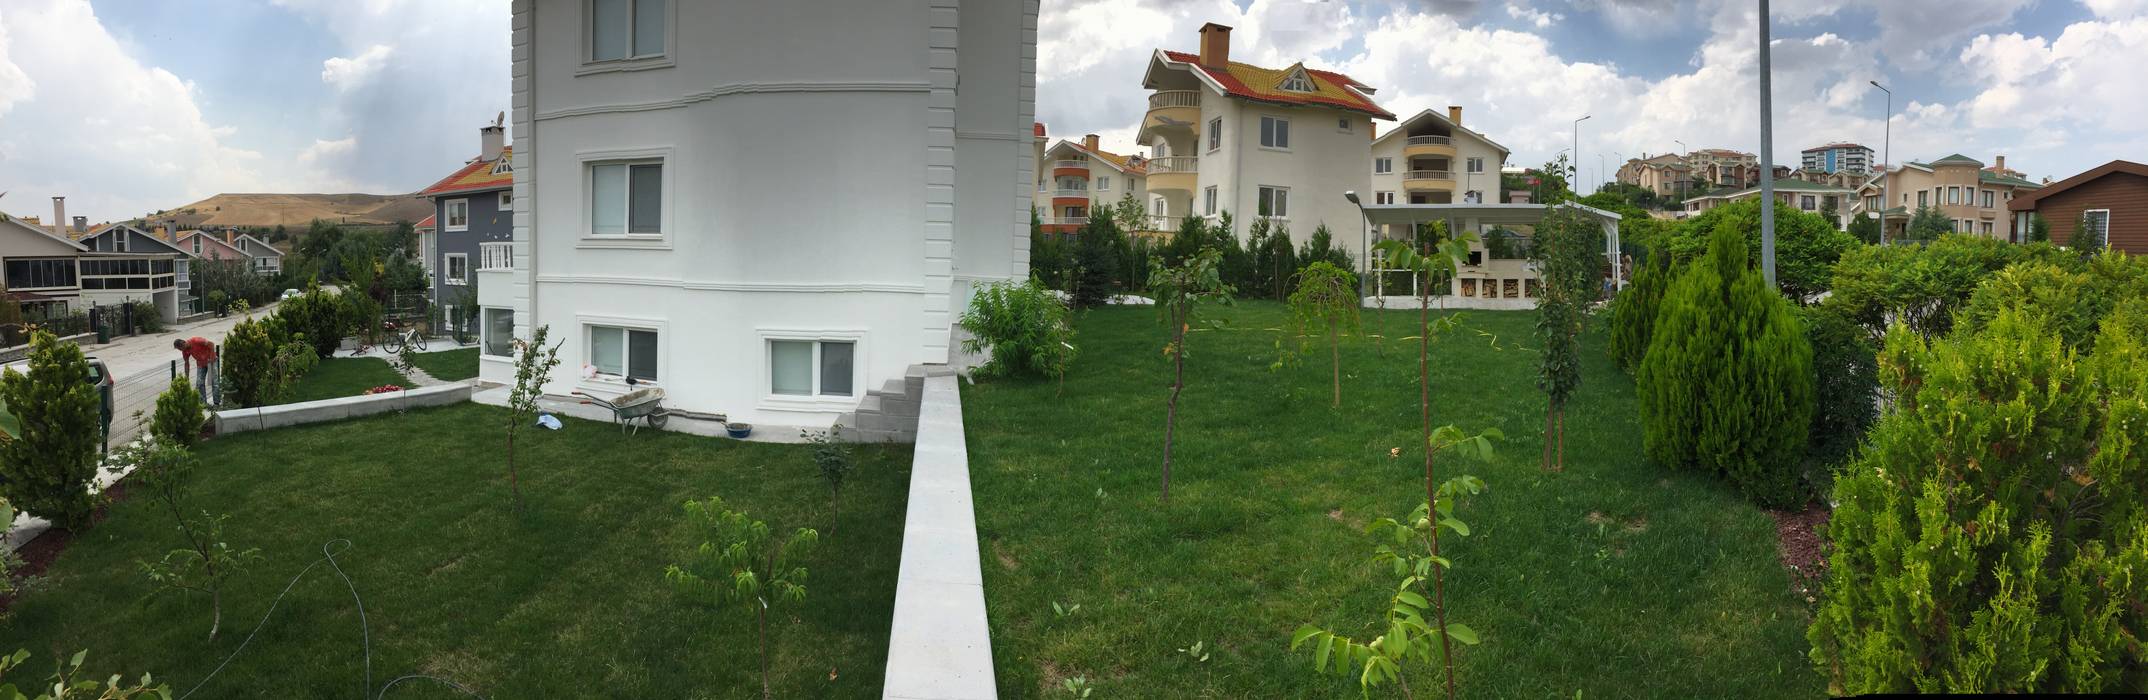 İÖ & ÜÖ villası , levent tekin iç mimarlık levent tekin iç mimarlık Front yard Concrete